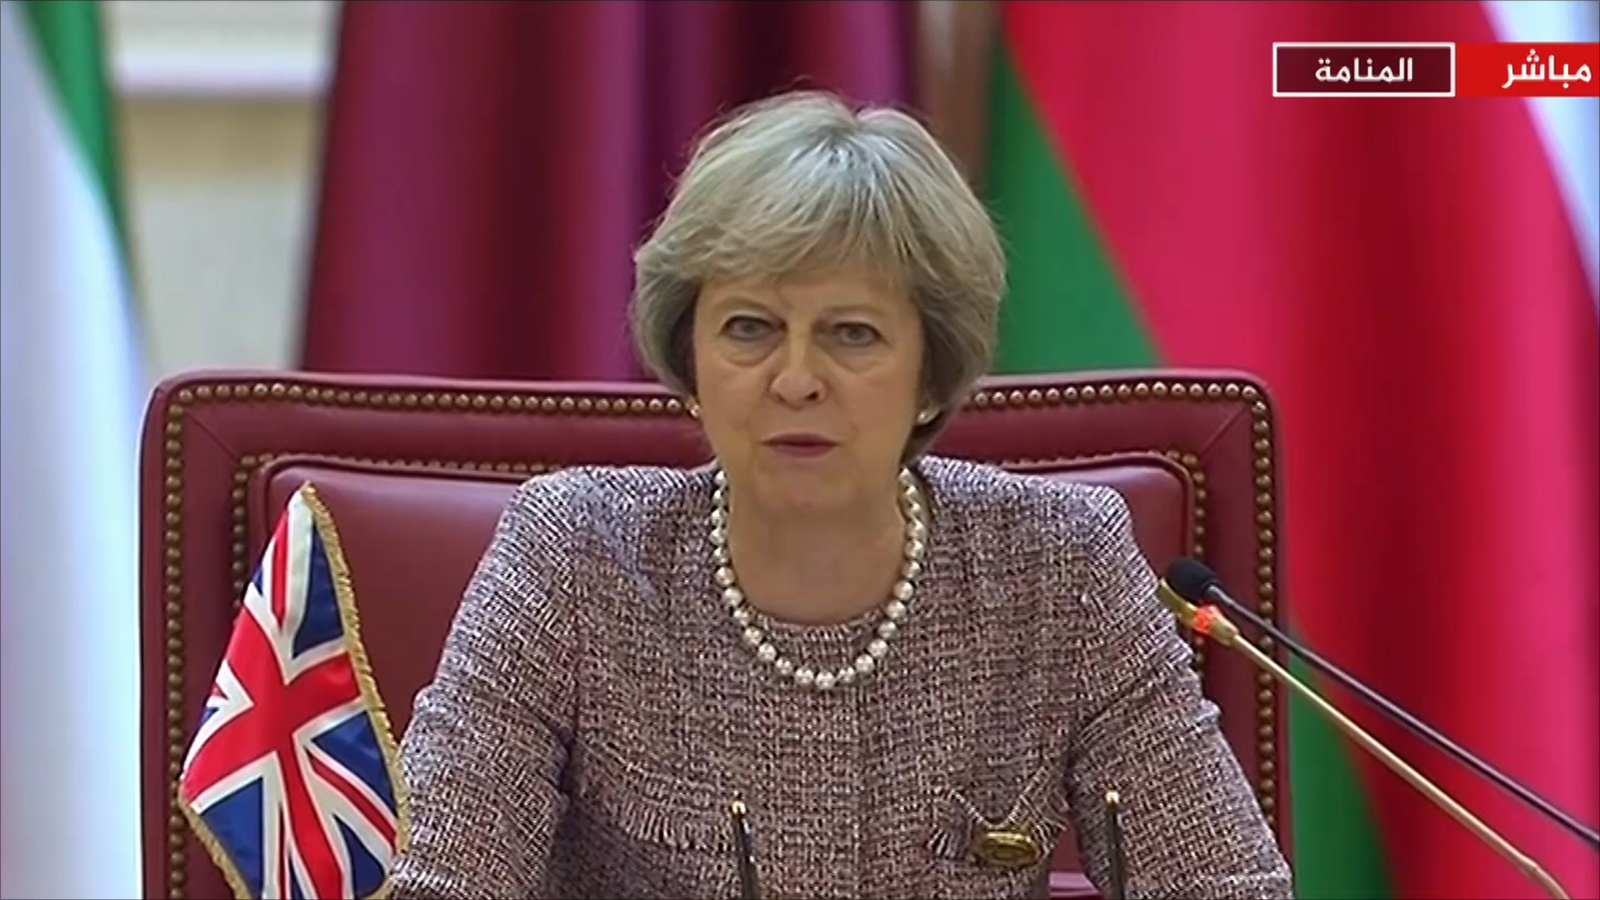 ‪تيريزا ماي: المملكة المتحدة ملتزمة بعقد شراكة مع الخليج من أجل التغلب على خطر إيران‬ (الجزيرة)